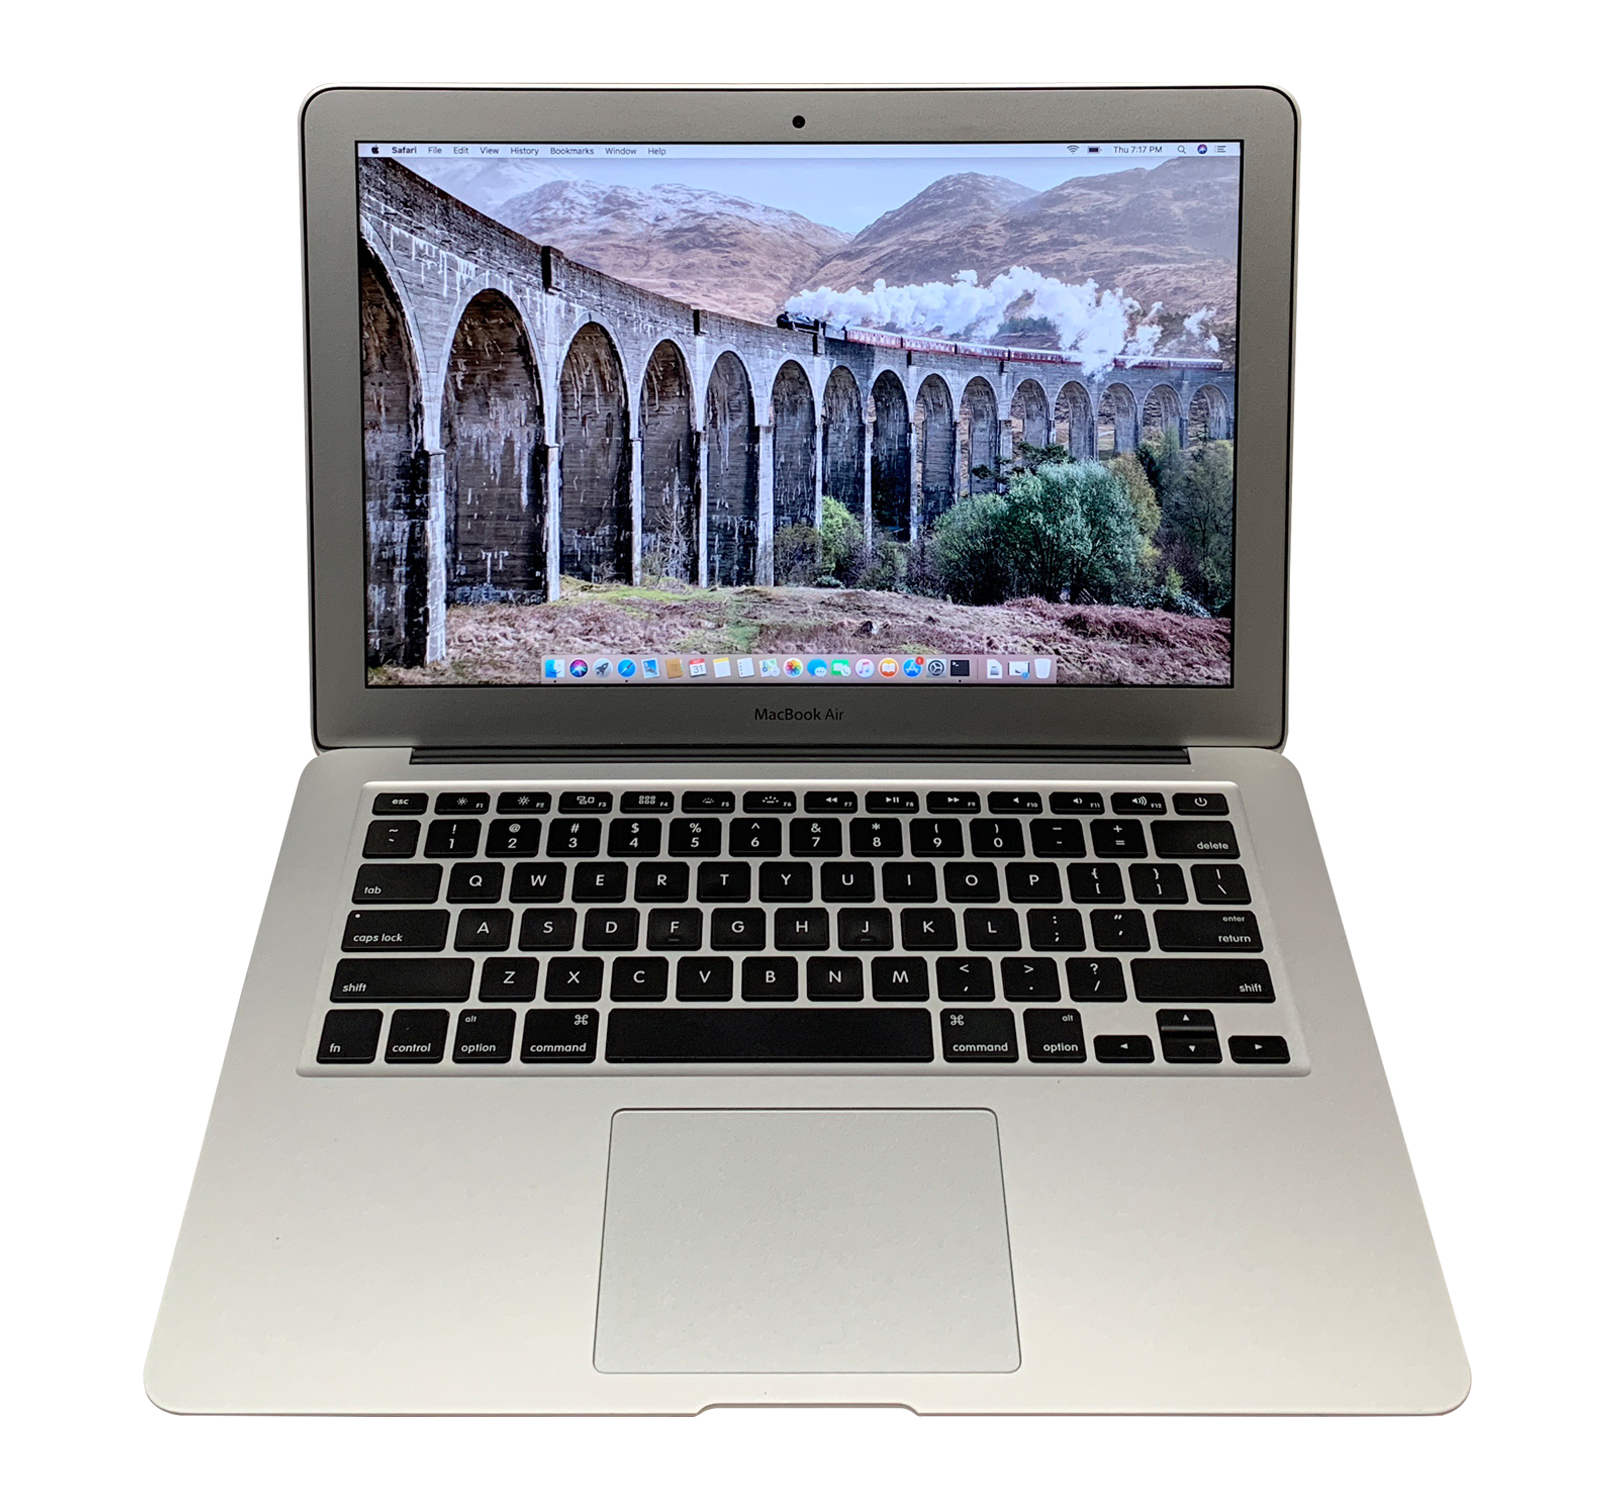 Apple Macbook Air 13" Turbo Boost 2.6ghz I5 256gb Ssd Os-2020 | 3 Year Warranty